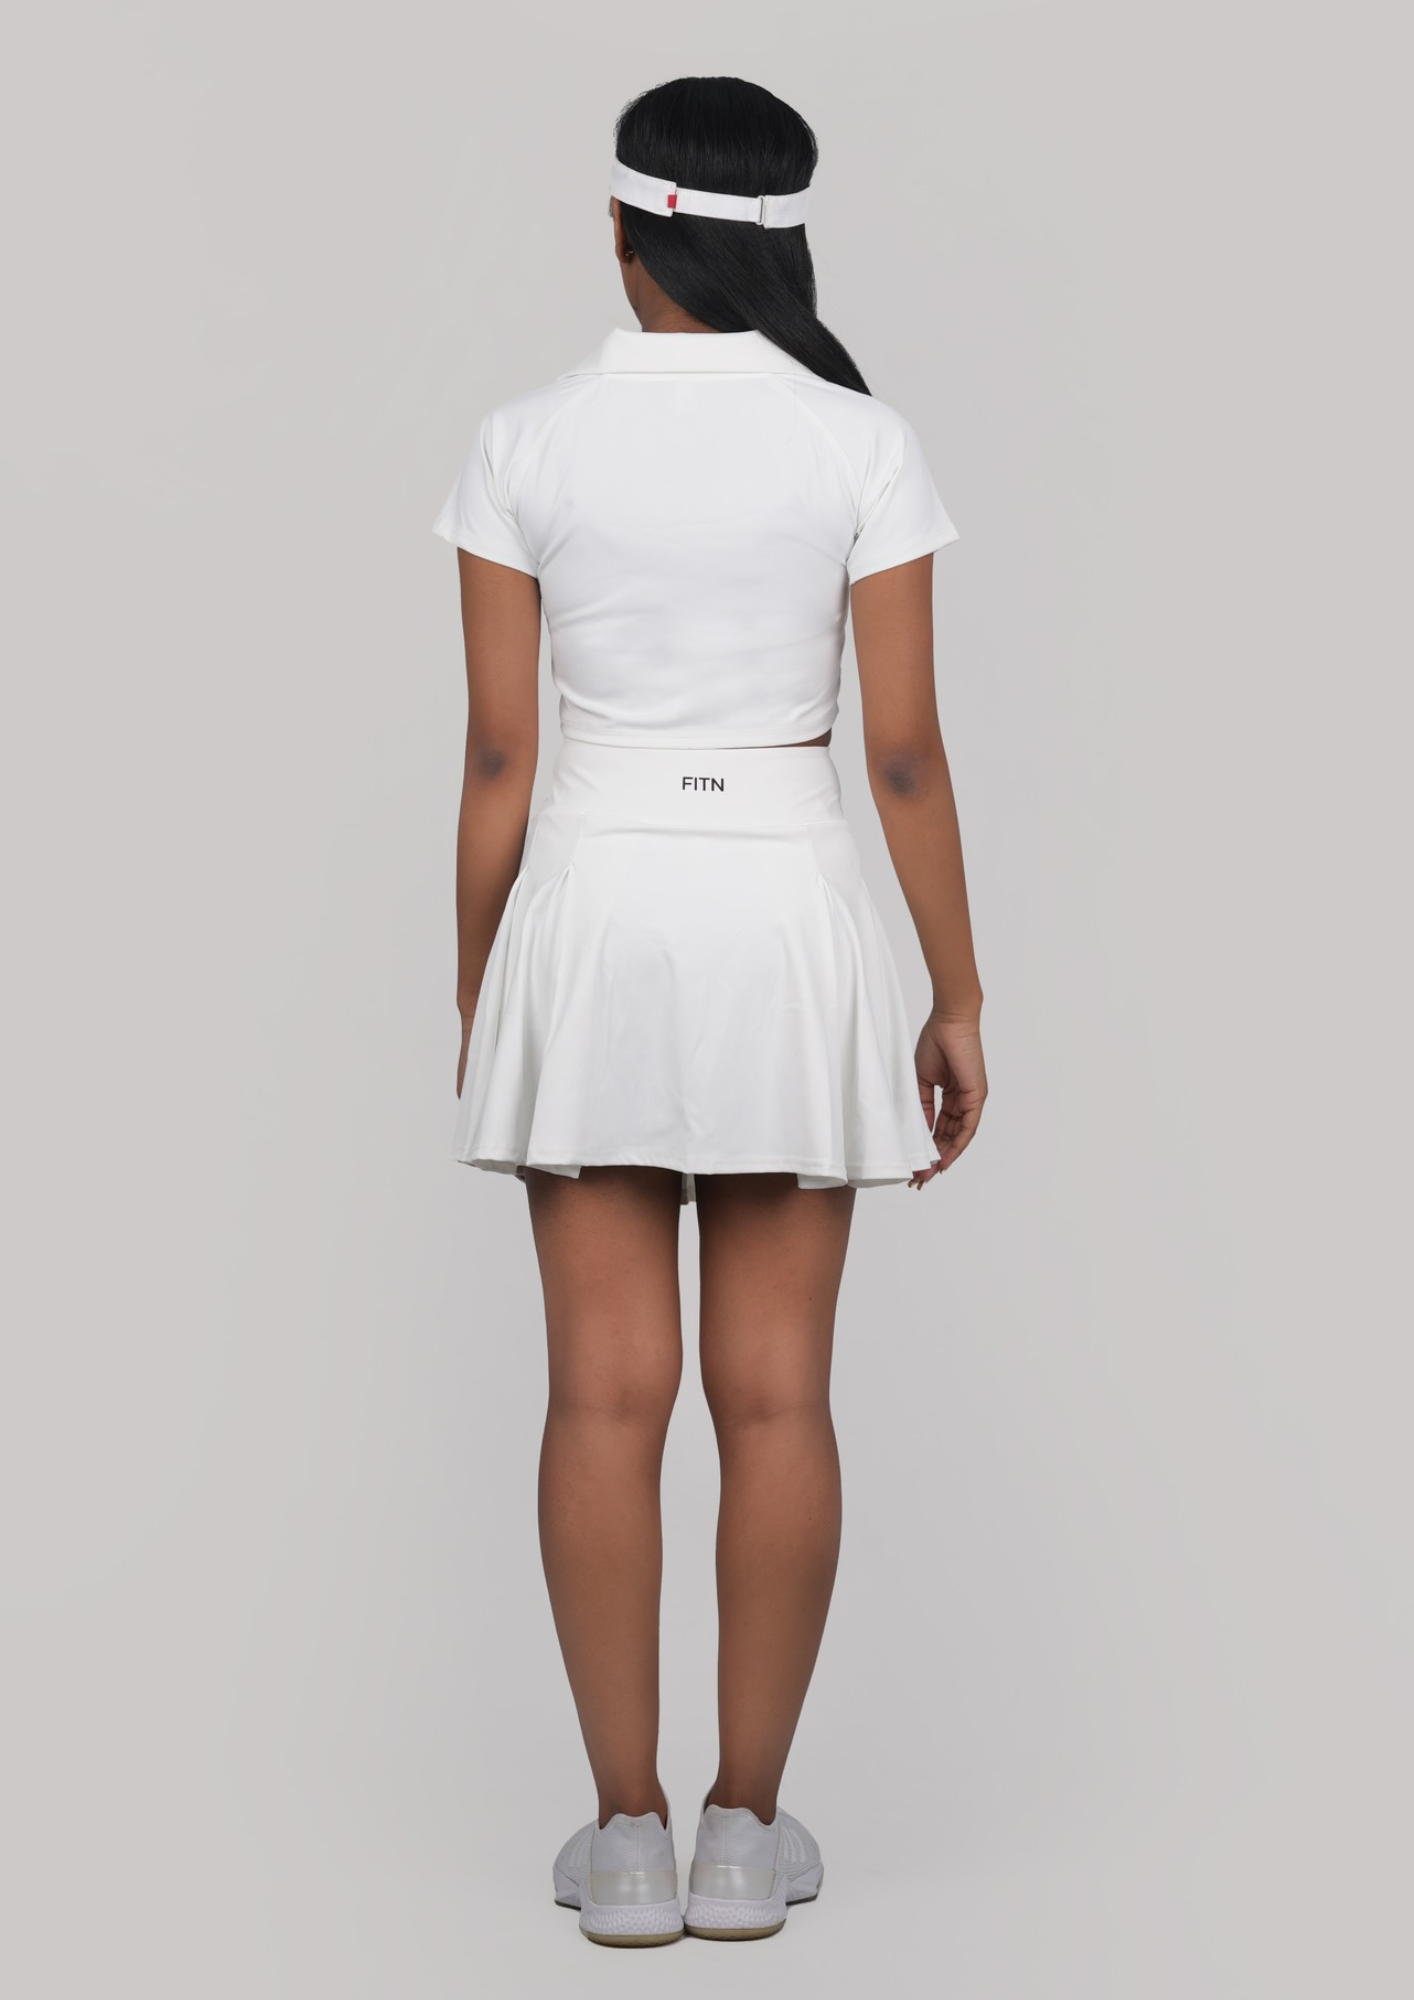 Tennis skirt white